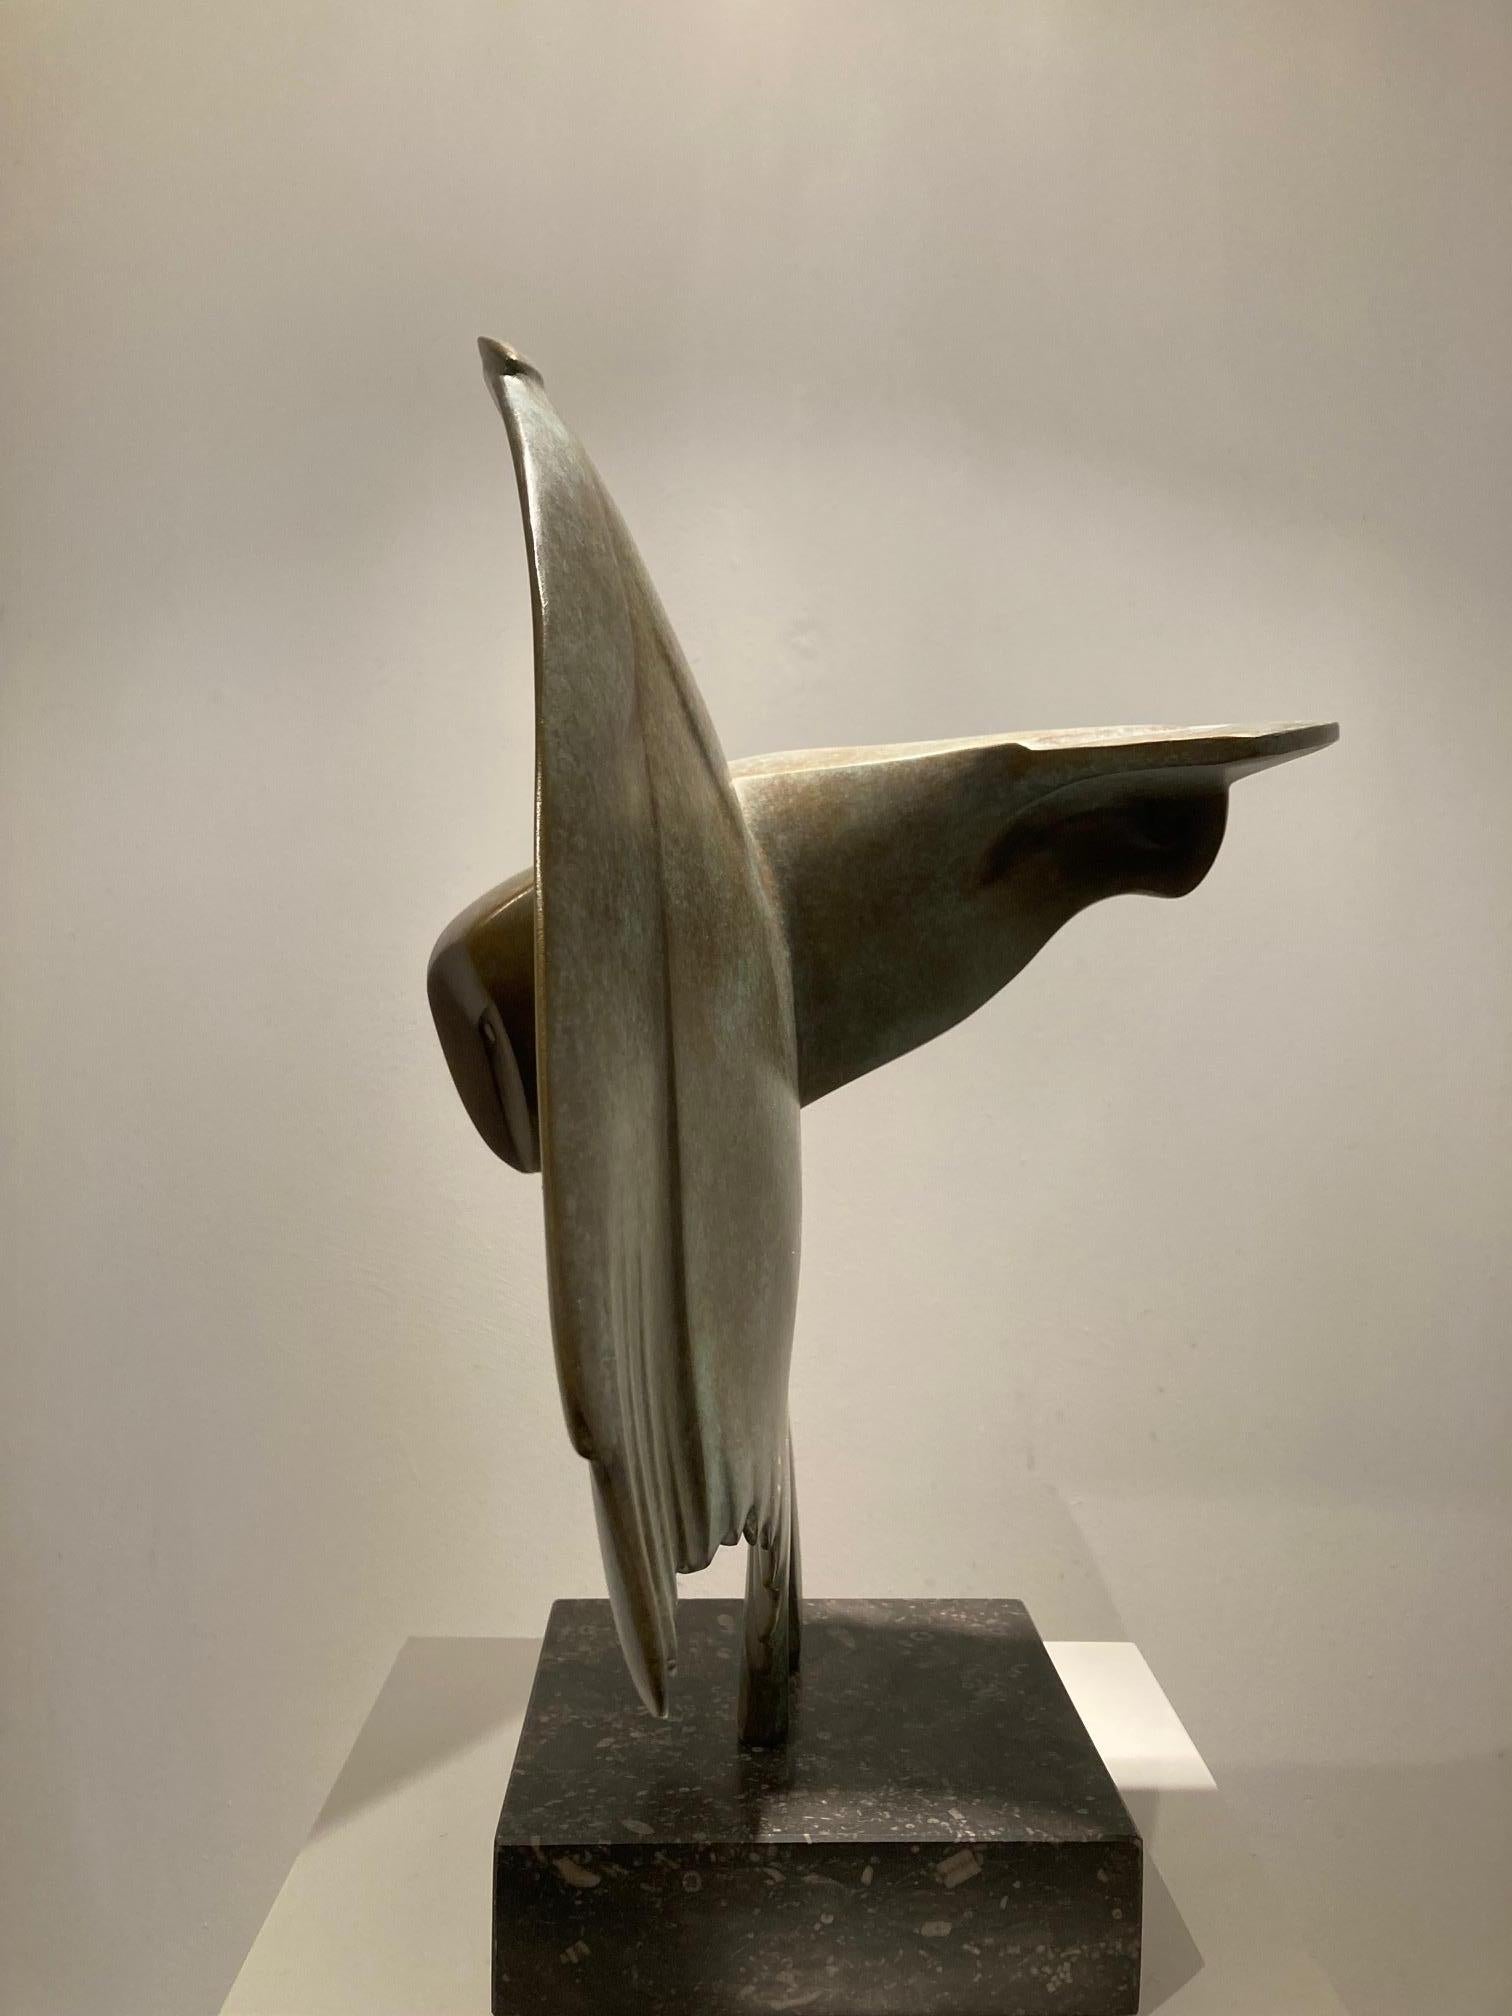 Vliegende Uil no. 7 Oiseau hibou volant Sculpture en bronze Edition limitée En stock

Evert den Hartog (né à Groot-Ammers, aux Pays-Bas, en 1949) a suivi une formation de sculpteur à l'Académie des arts visuels de Rotterdam. Dans les années